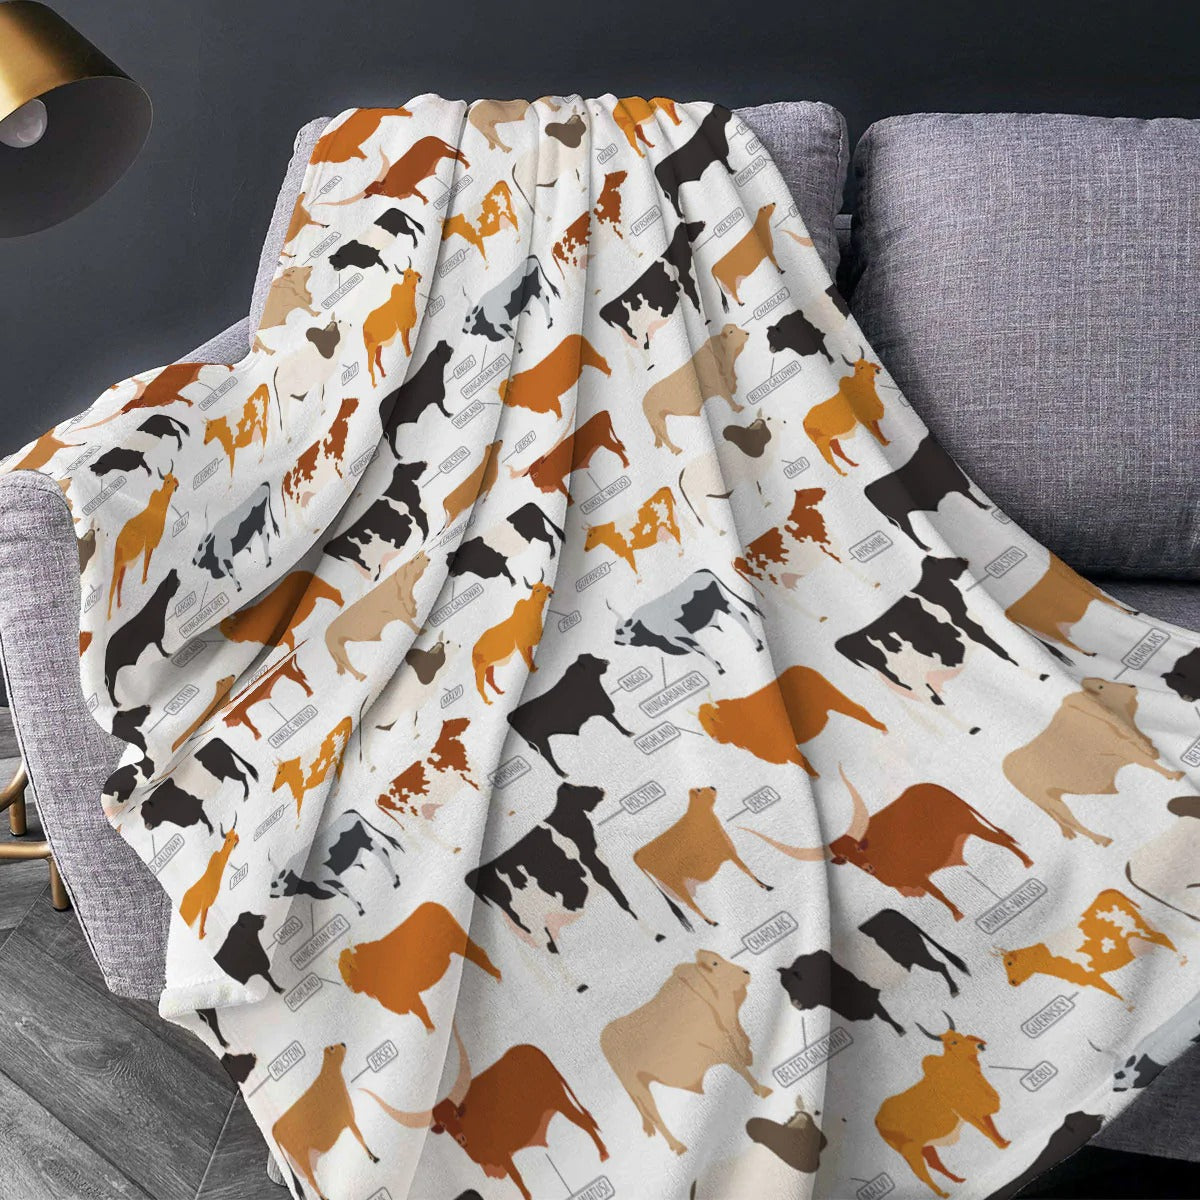 Cattle Breed Pattern Blanket/ Farm Fleece Sherpa 60x80 Blanket/ Farm Blanket/ Cute Animal Warm Soft Cozy Blanket